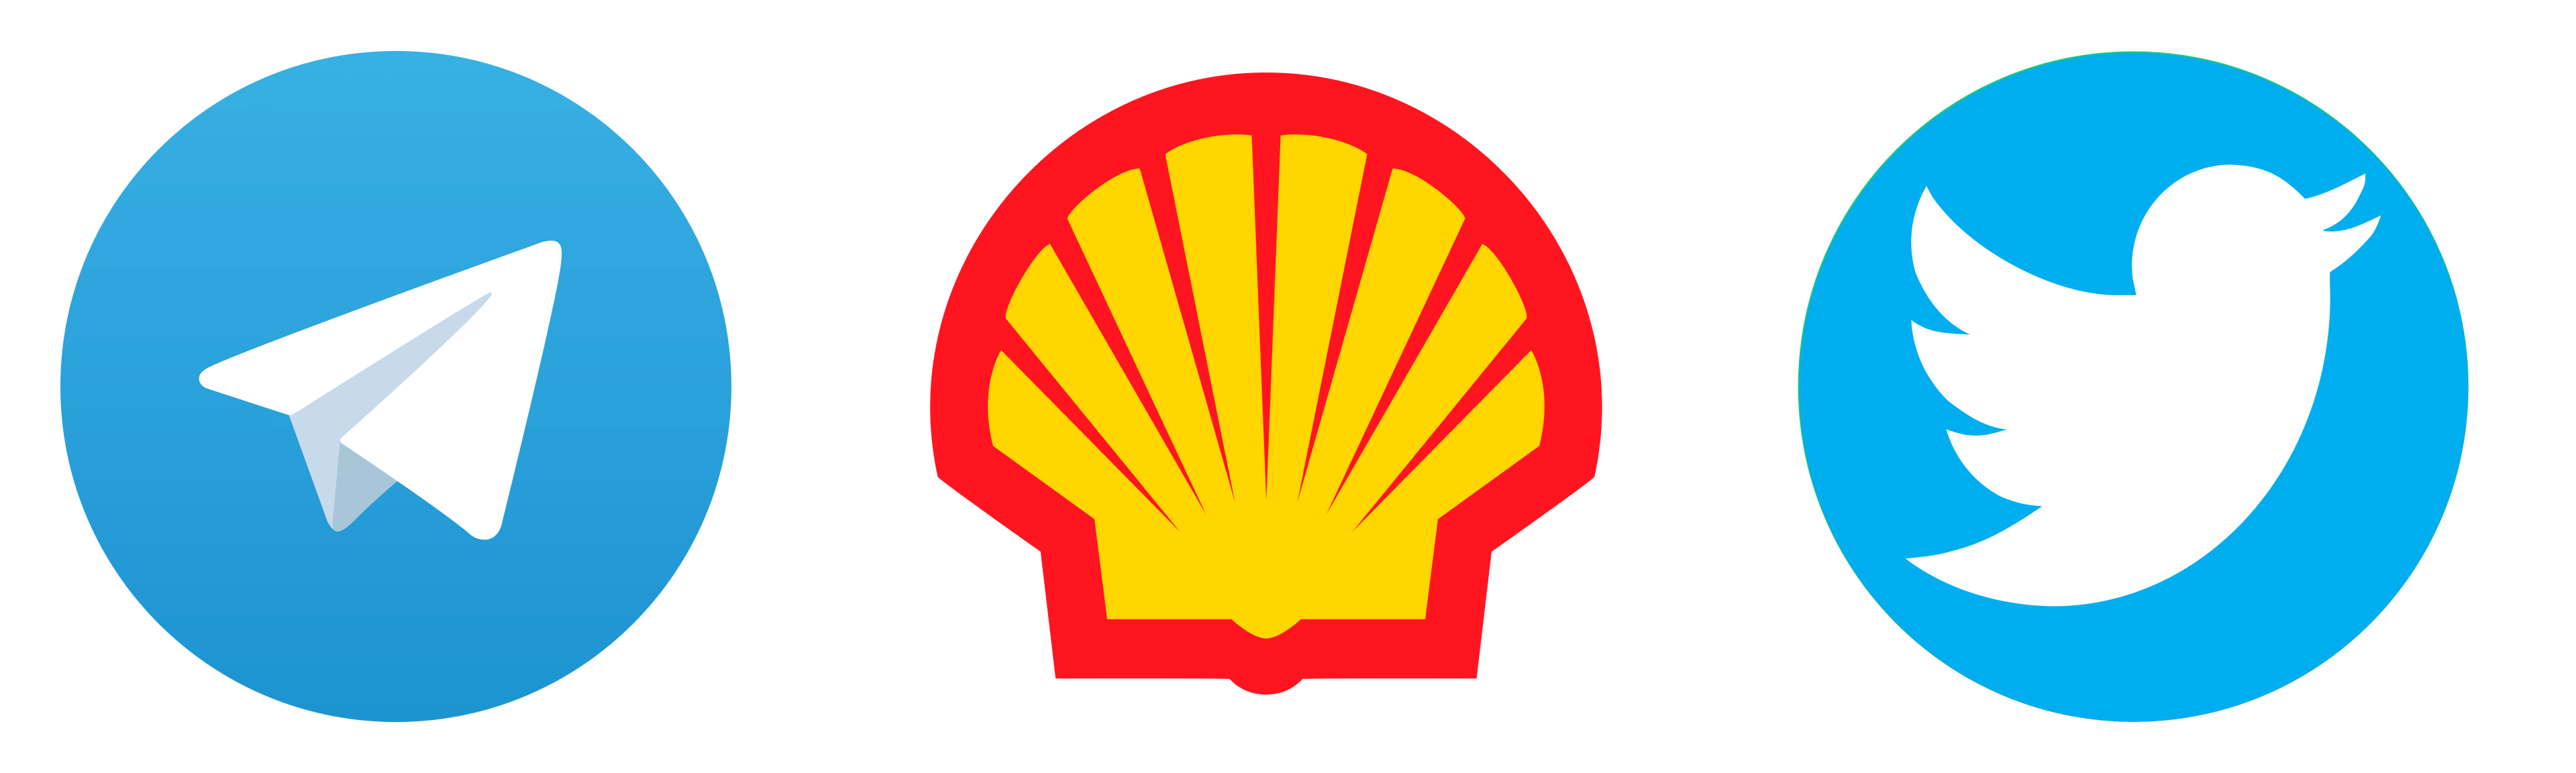 Логотипы Telegram, Shell и Twitter